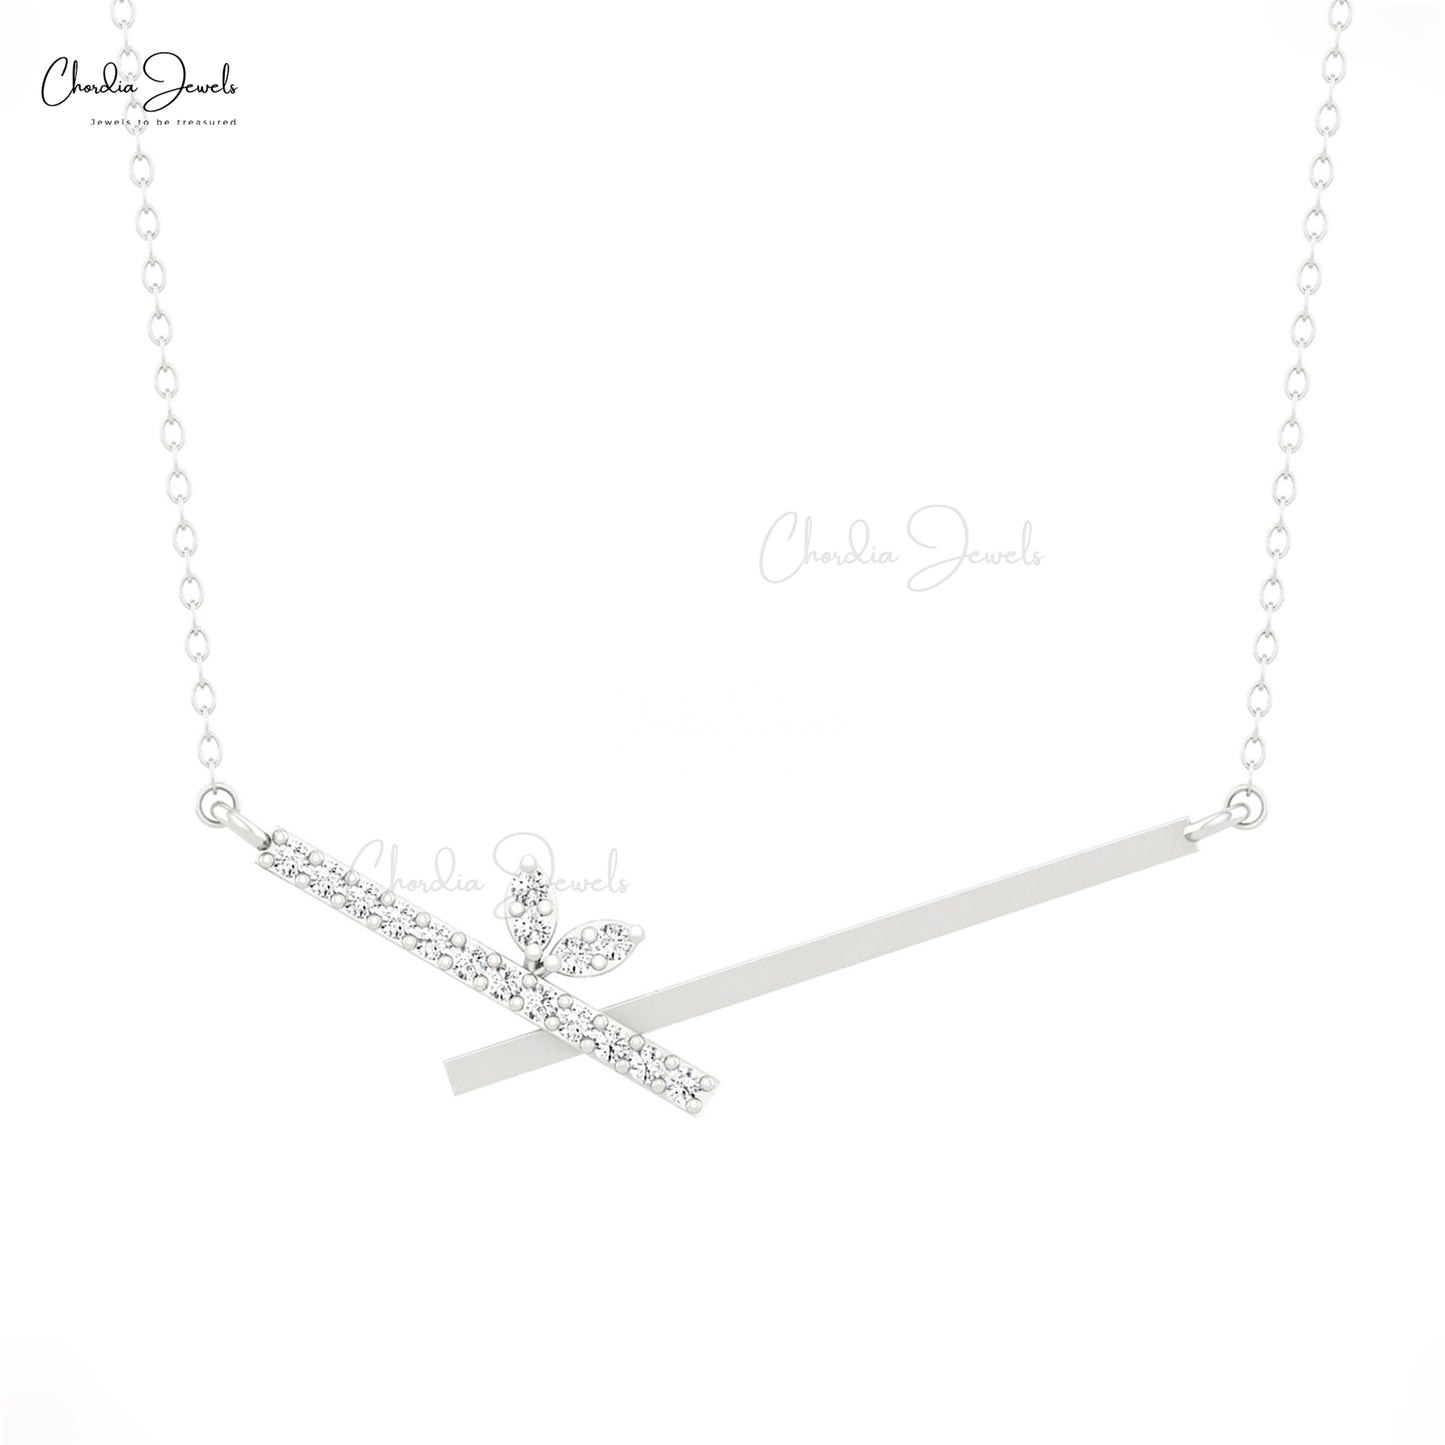 Jessica DeCarlo - Small chevron necklace in silver - Norbu